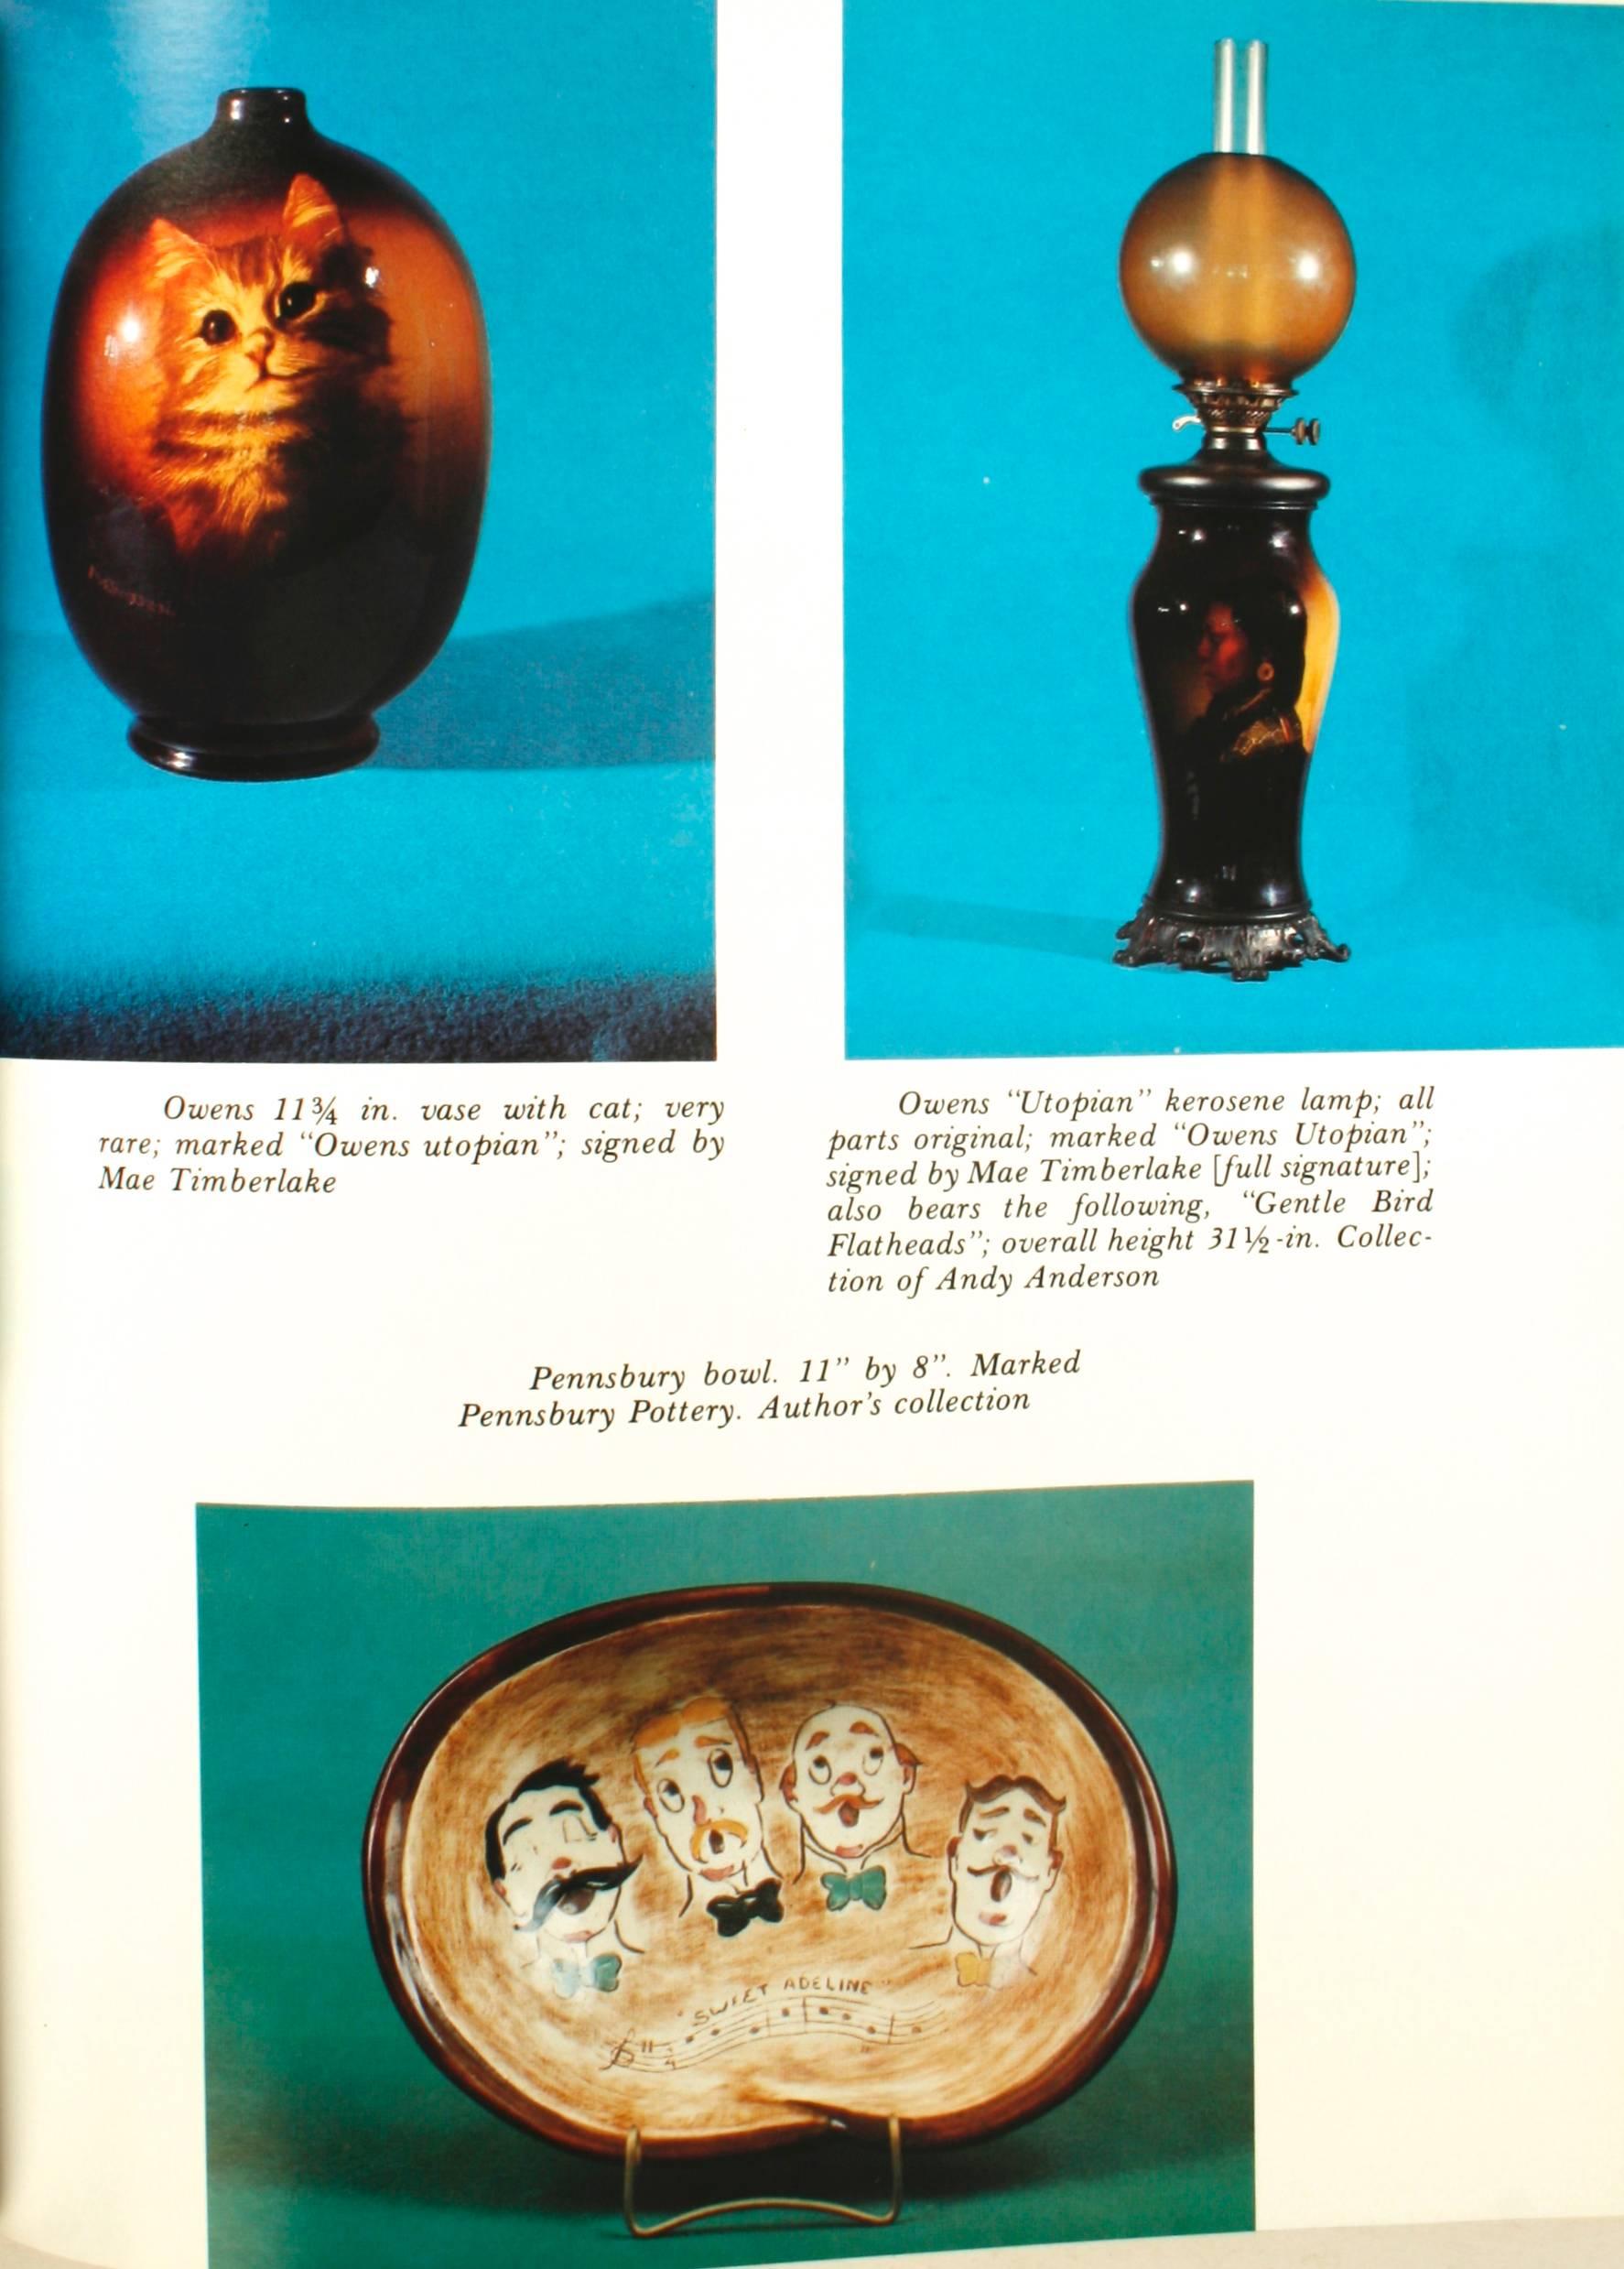 Art Pottery of America par Lucile Henske. Exton : Schiffer Publishing Limited, 1982. Première édition reliée avec jaquette. 368 pages. Une étude de la poterie d'art américaine produite à la fin du XIXe siècle et au début du XXe siècle. Il est classé